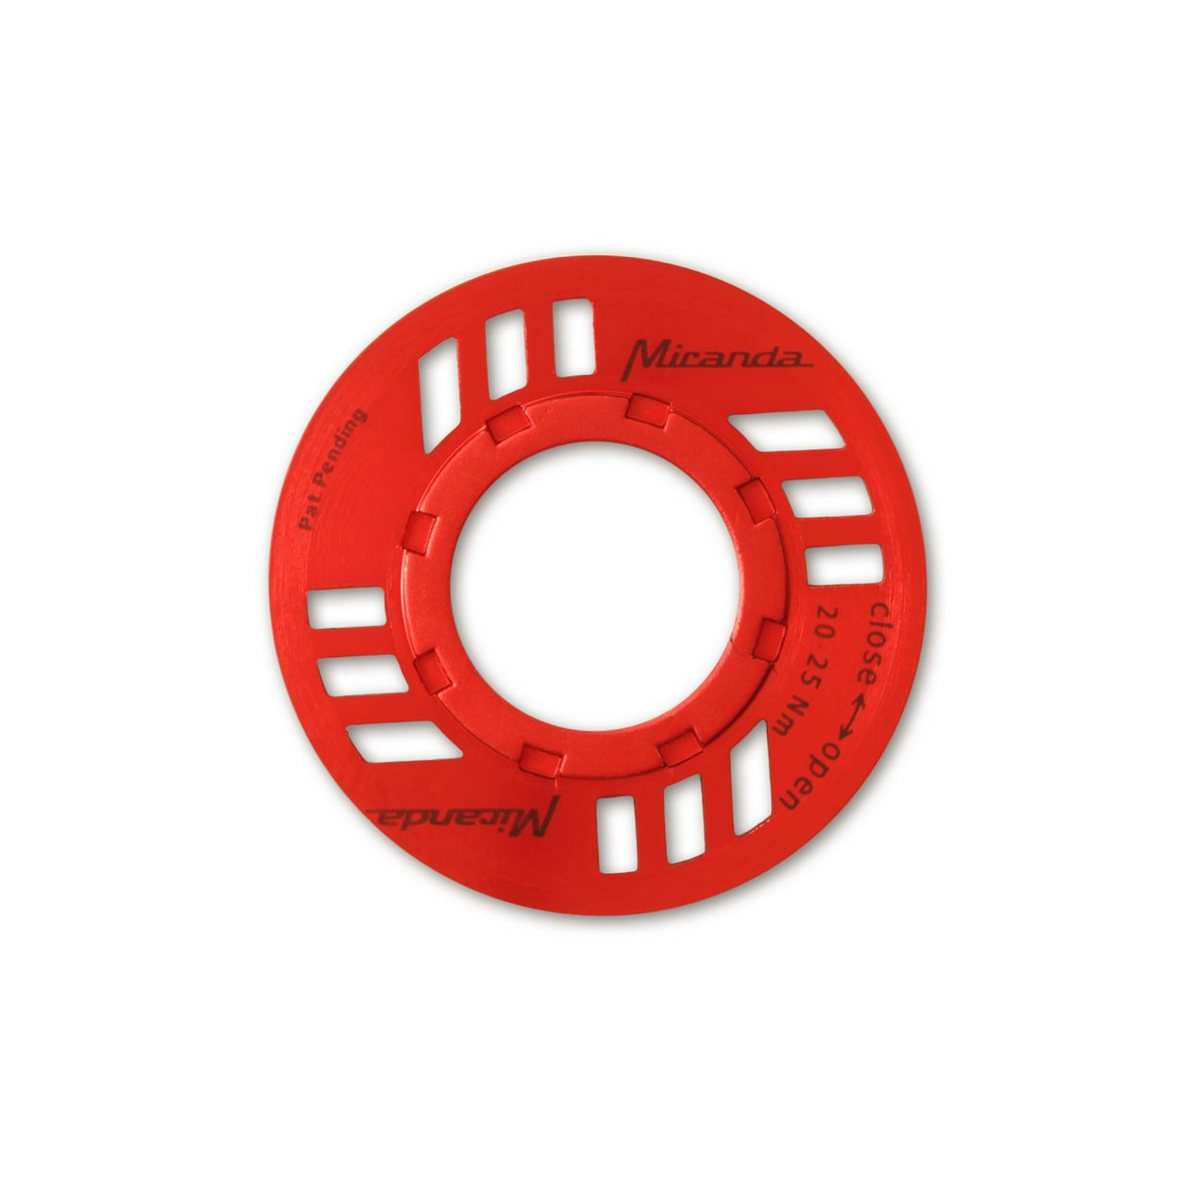 Porca E-Chainguard para unidade de acionamento eBike Bosch vermelho